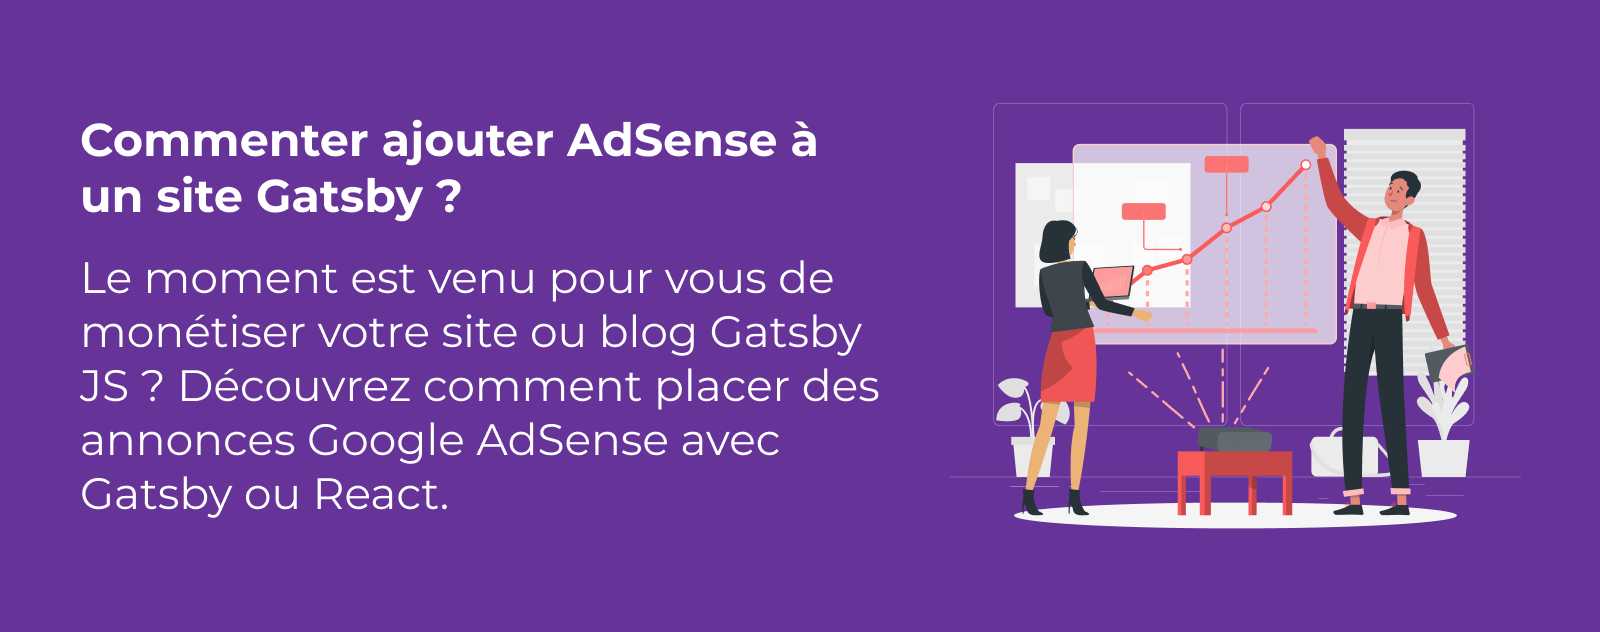 Comment ajouter AdSense à un site Gatsby ?